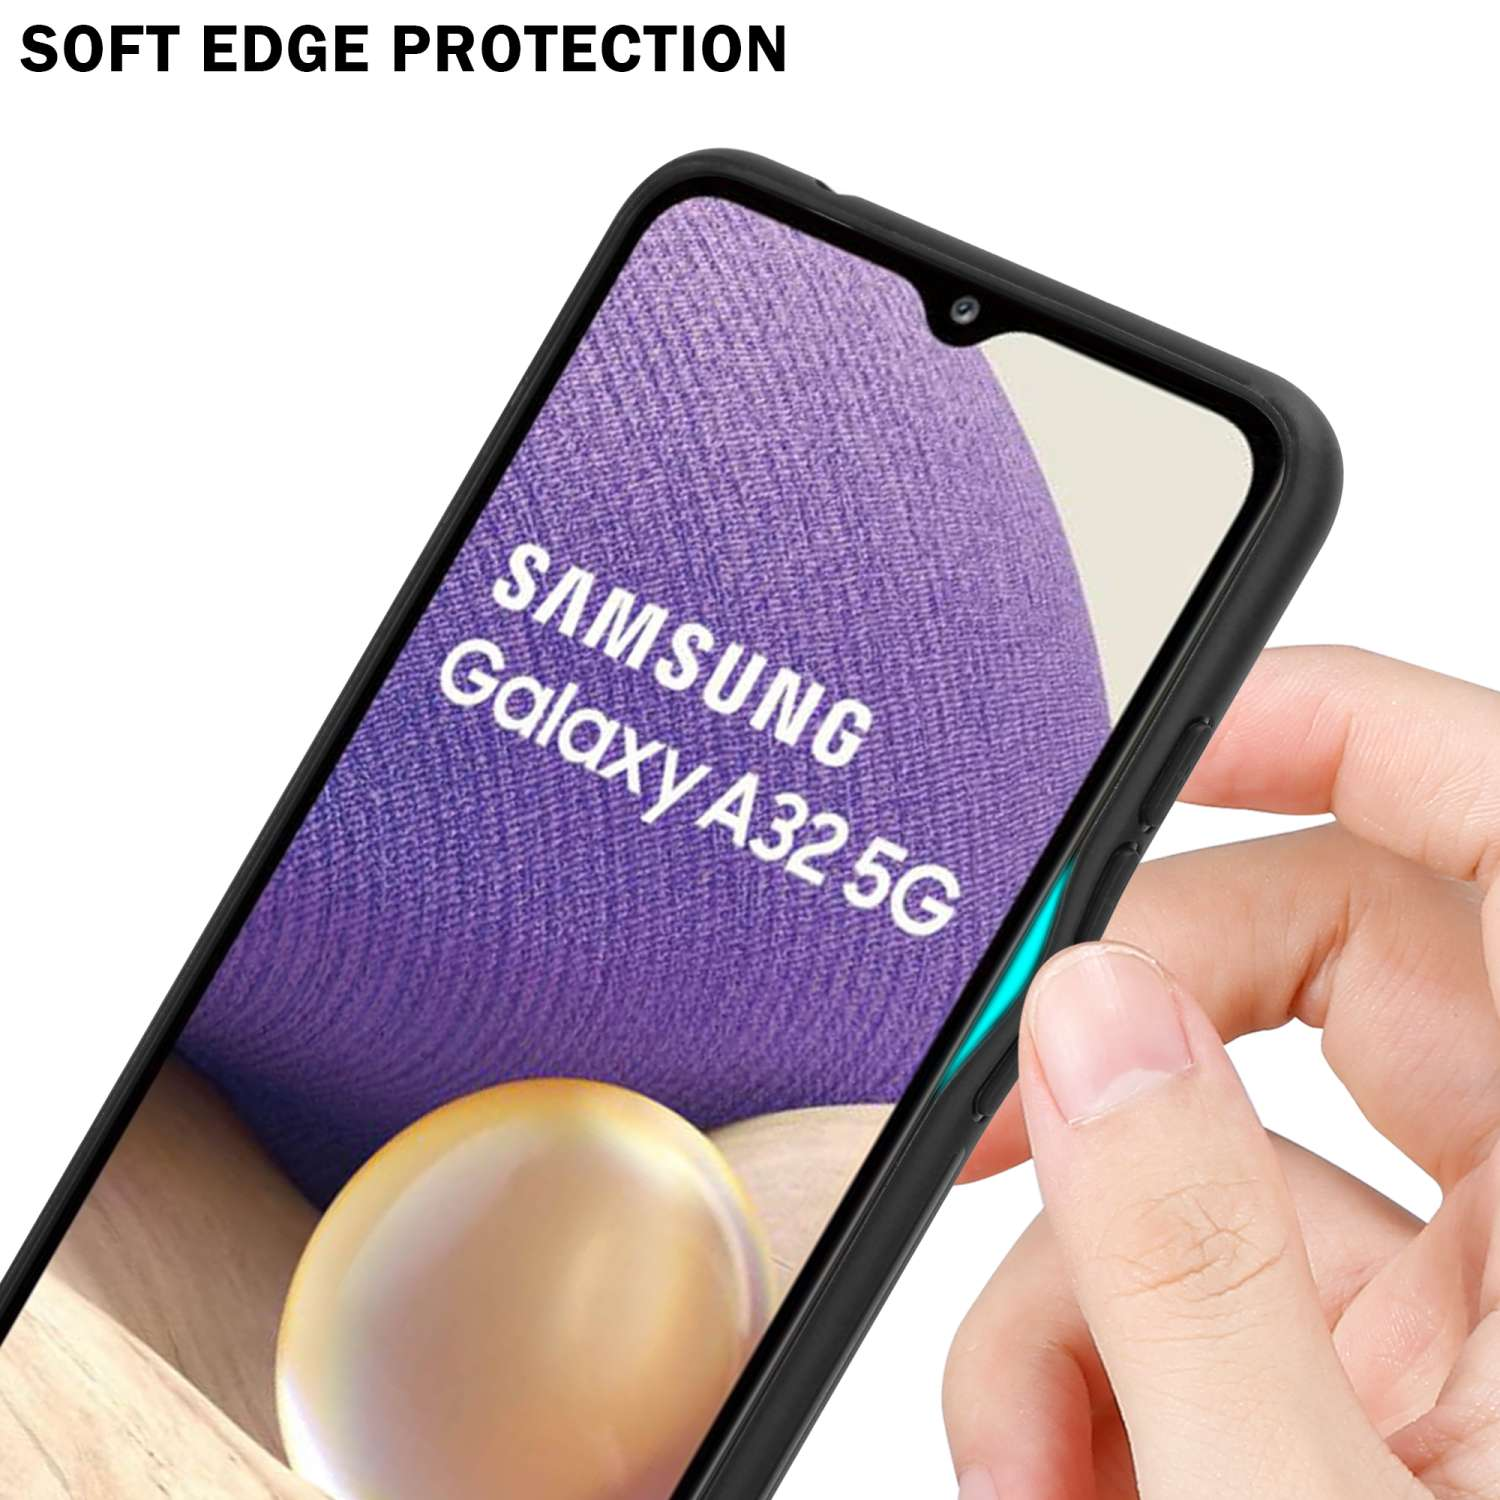 Glas, 5G, Galaxy Samsung, A32 Hülle Backcover, Farben ROT - 2 CADORABO SCHWARZ aus TPU Silikon